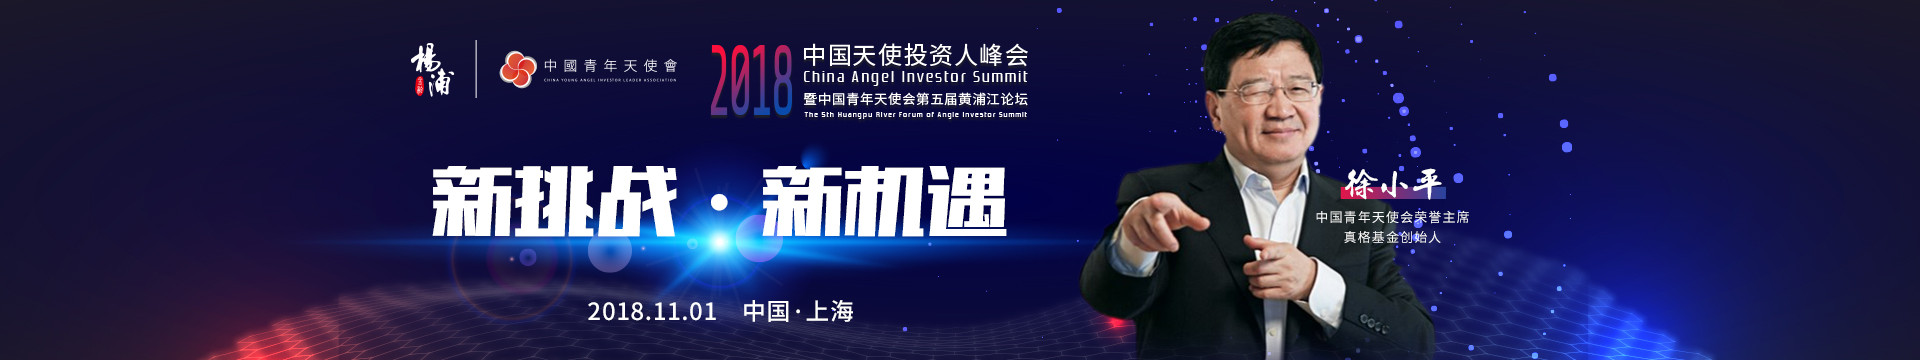 中国（上海）2018中国天使投资人峰会暨中国青年天使会第五届黄浦江论坛